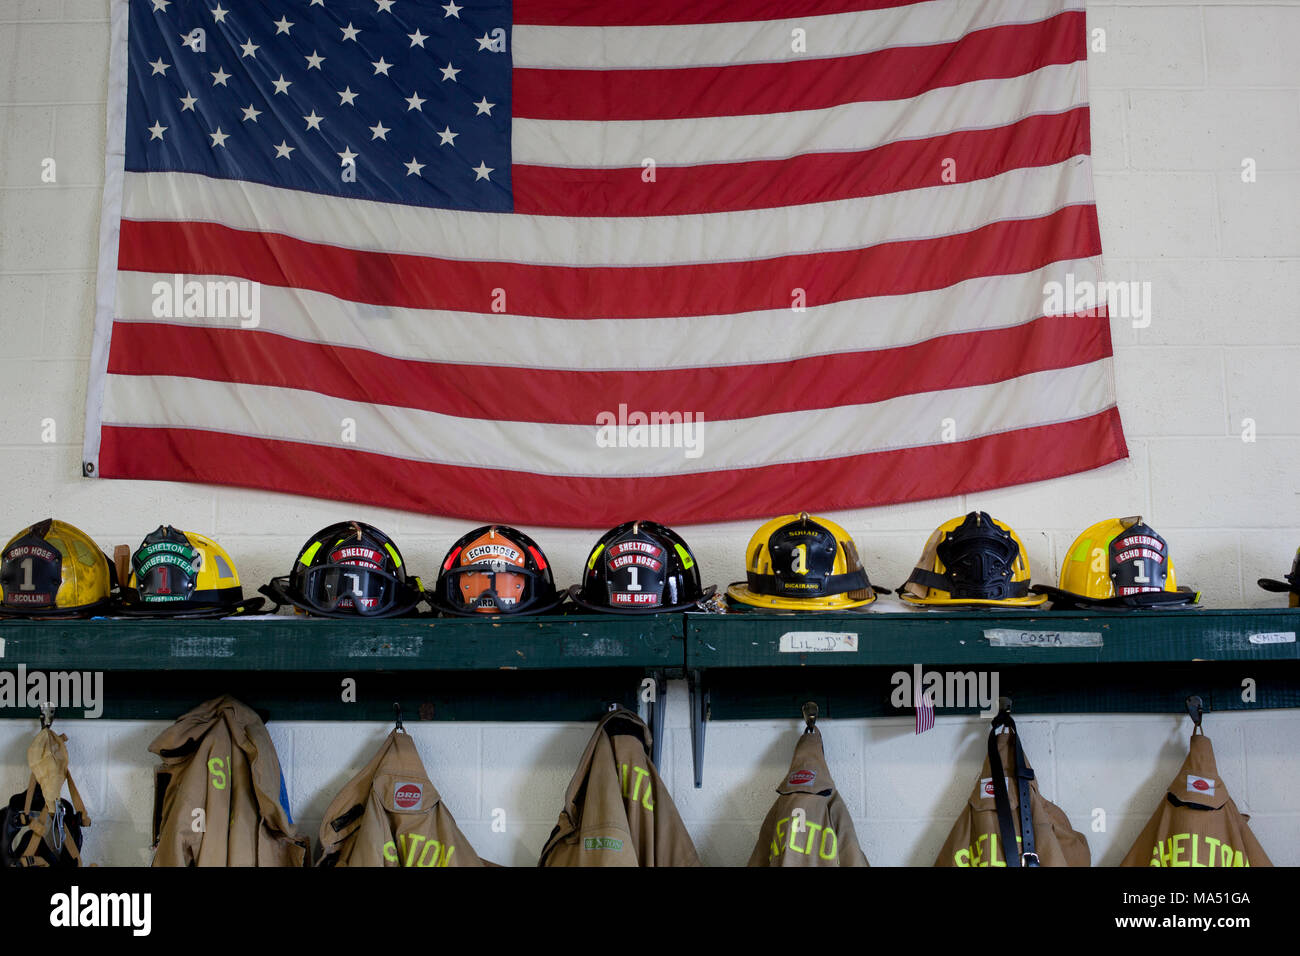 Schutzkleidung, Helme der Feuerwehrleute, und Wahlbeteiligung Mäntel zusammen mit einer amerikanischen Flagge auf Anzeige in der örtlichen freiwilligen Firehouse Stockfoto